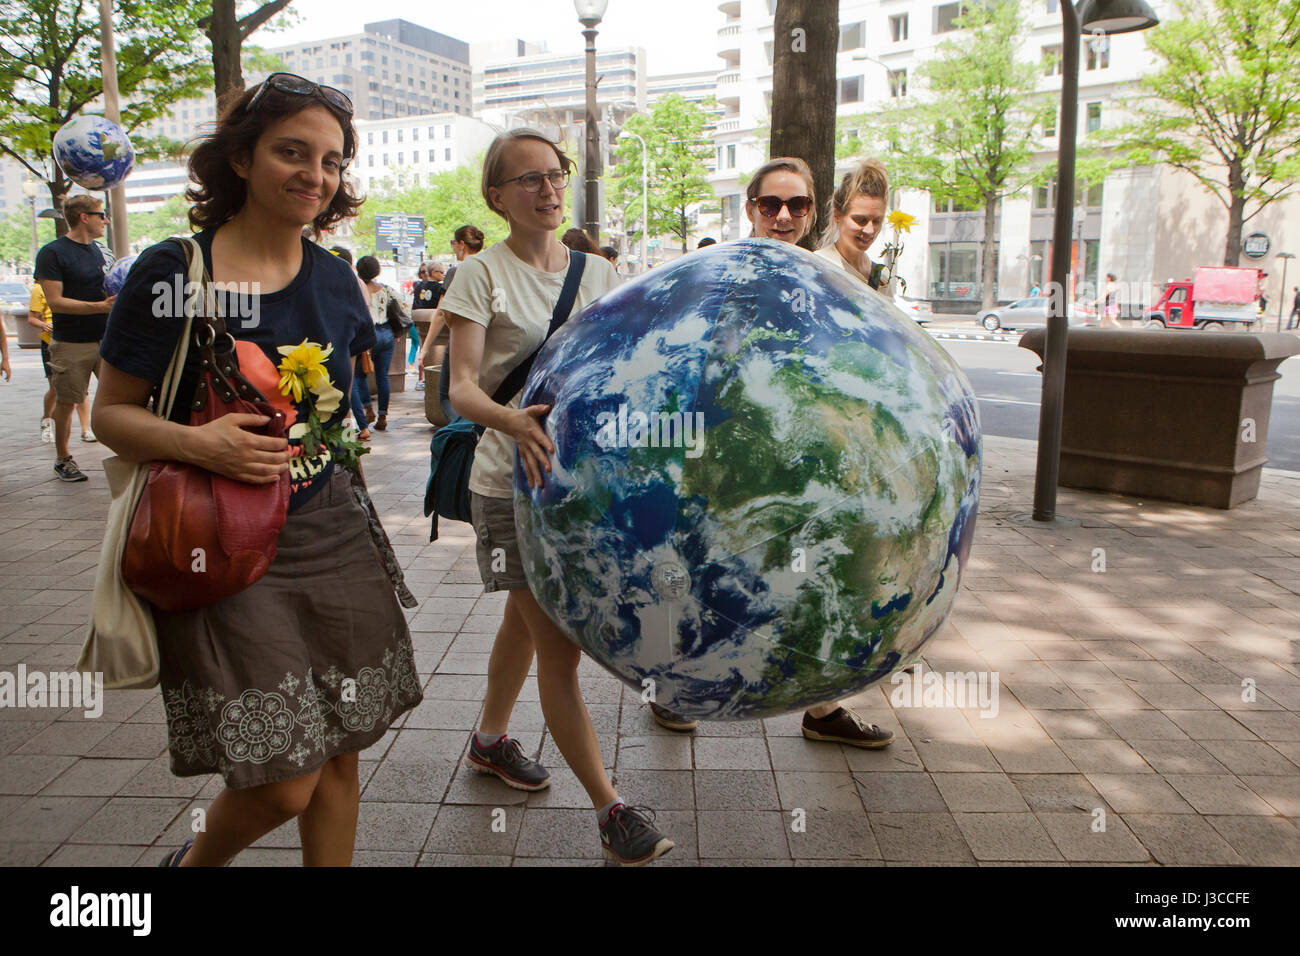 Le climat de 2017 personnes (mars femme tenant un ballon blue earth) - Washington, DC USA Banque D'Images